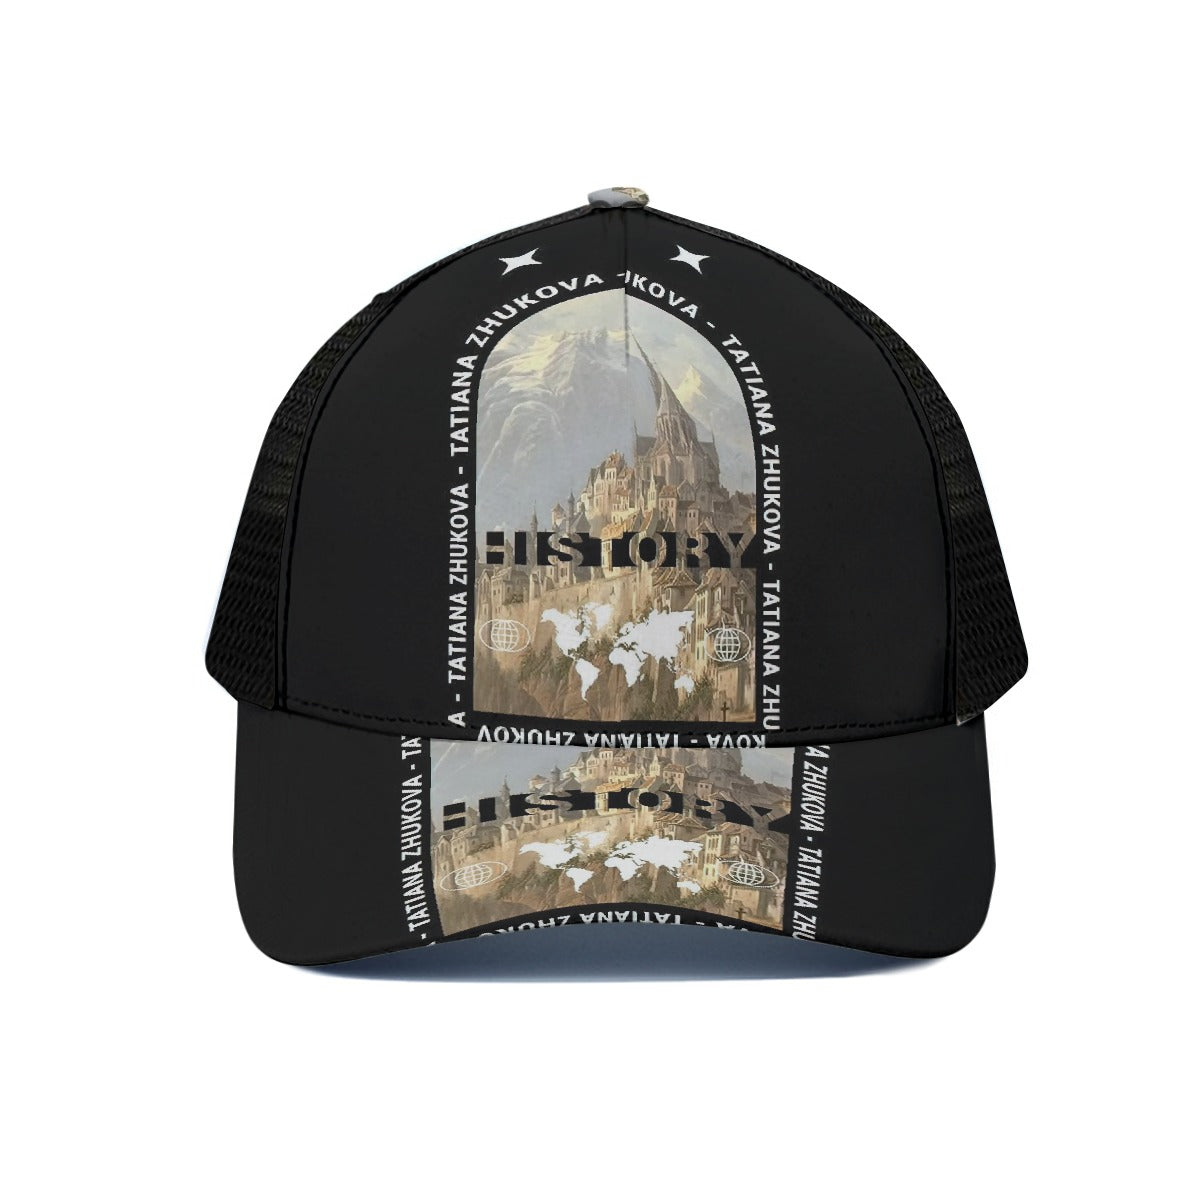 Unisex Trucker Hat With Black Half-mesh